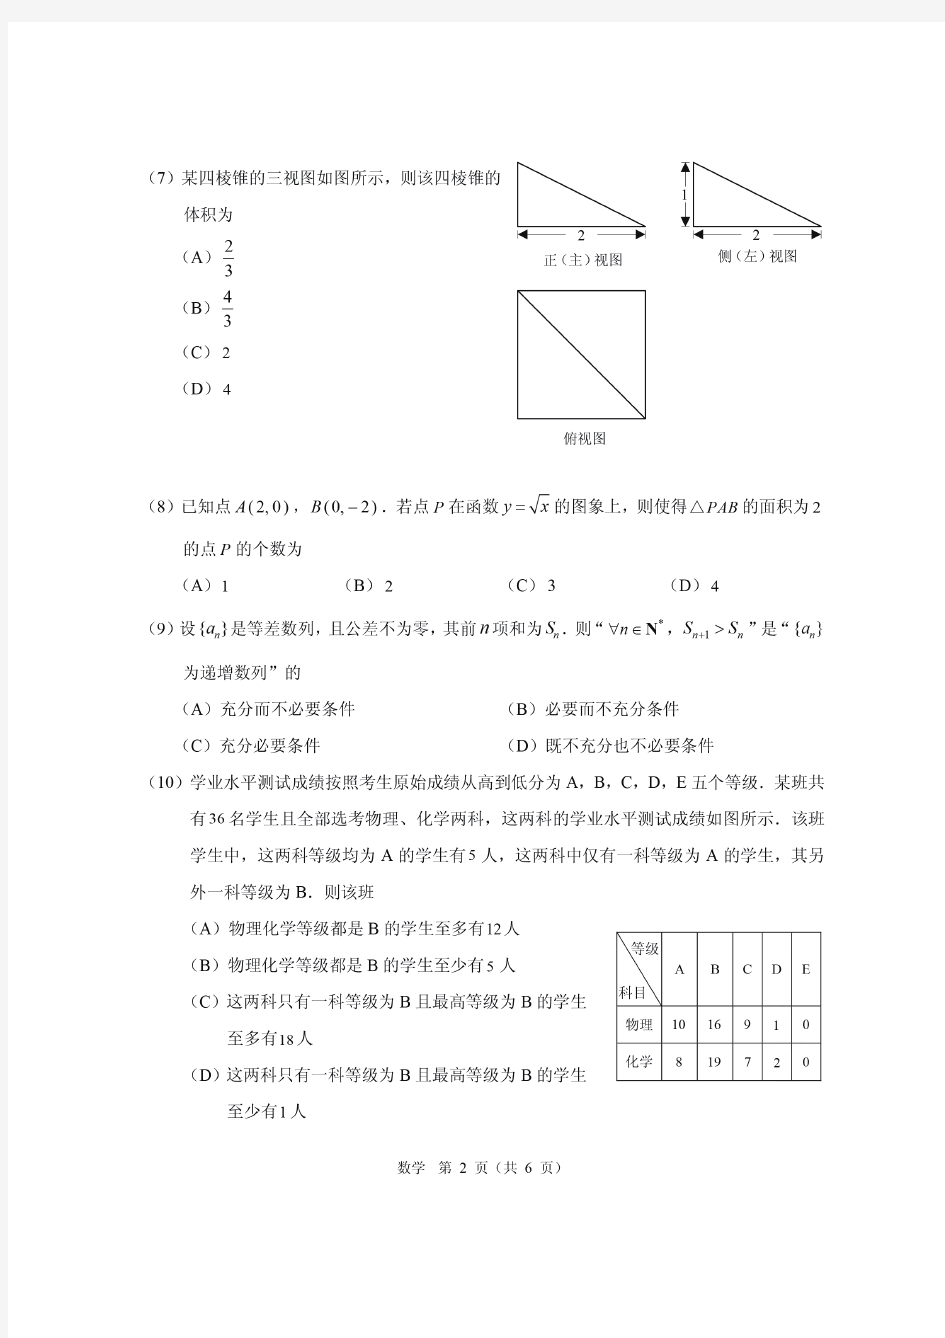 2020年北京高考适应性统一考试(试卷及答案)